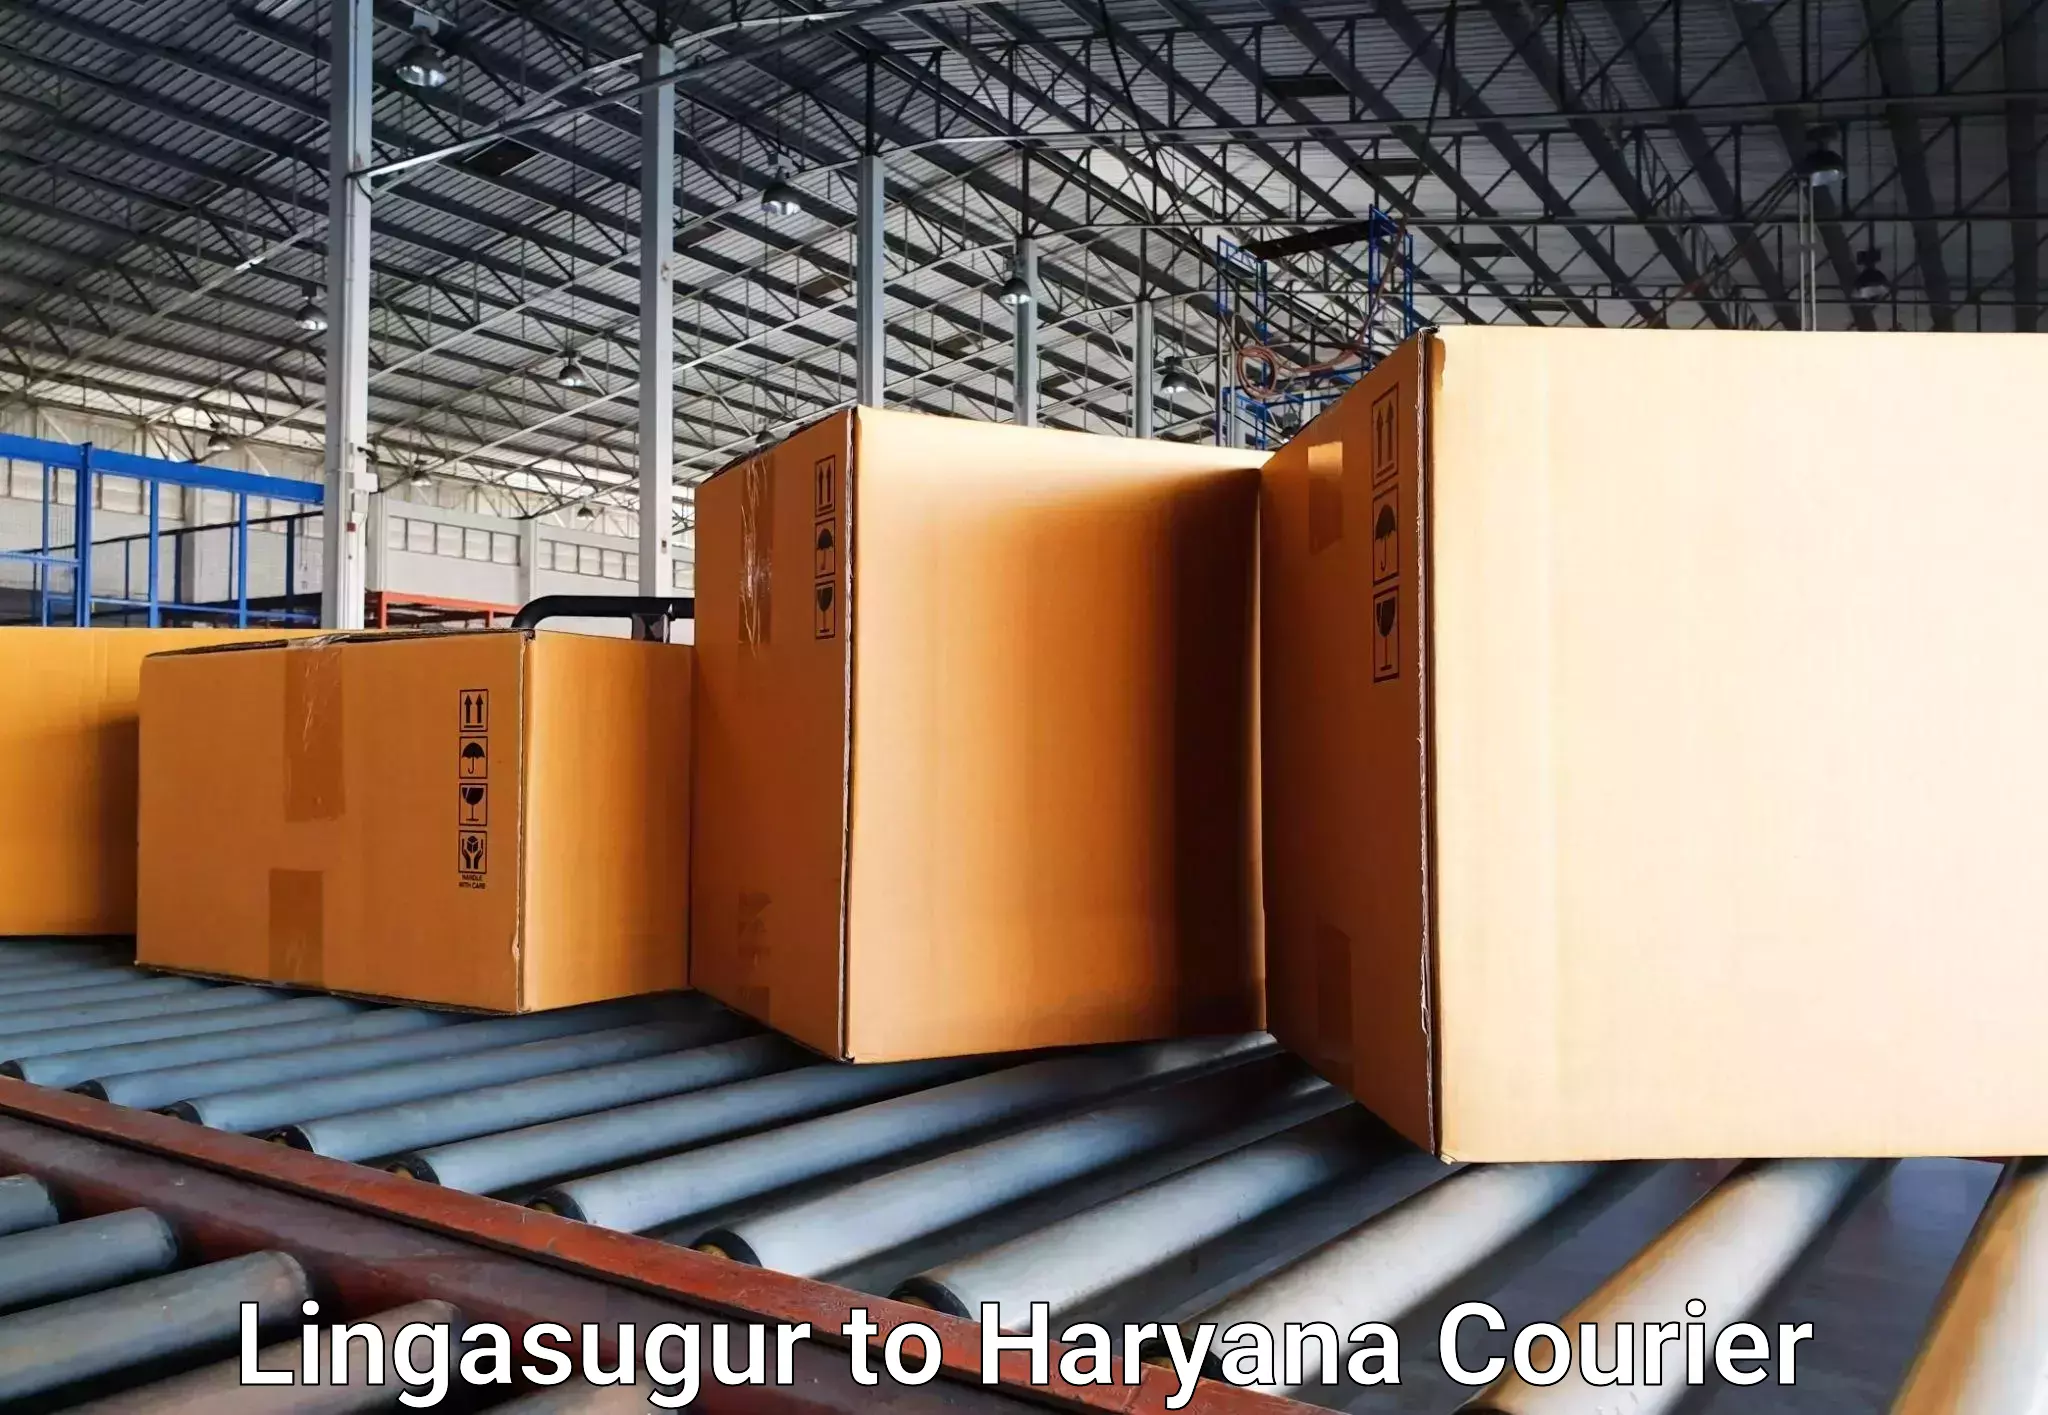 Luggage transport company Lingasugur to Gurgaon